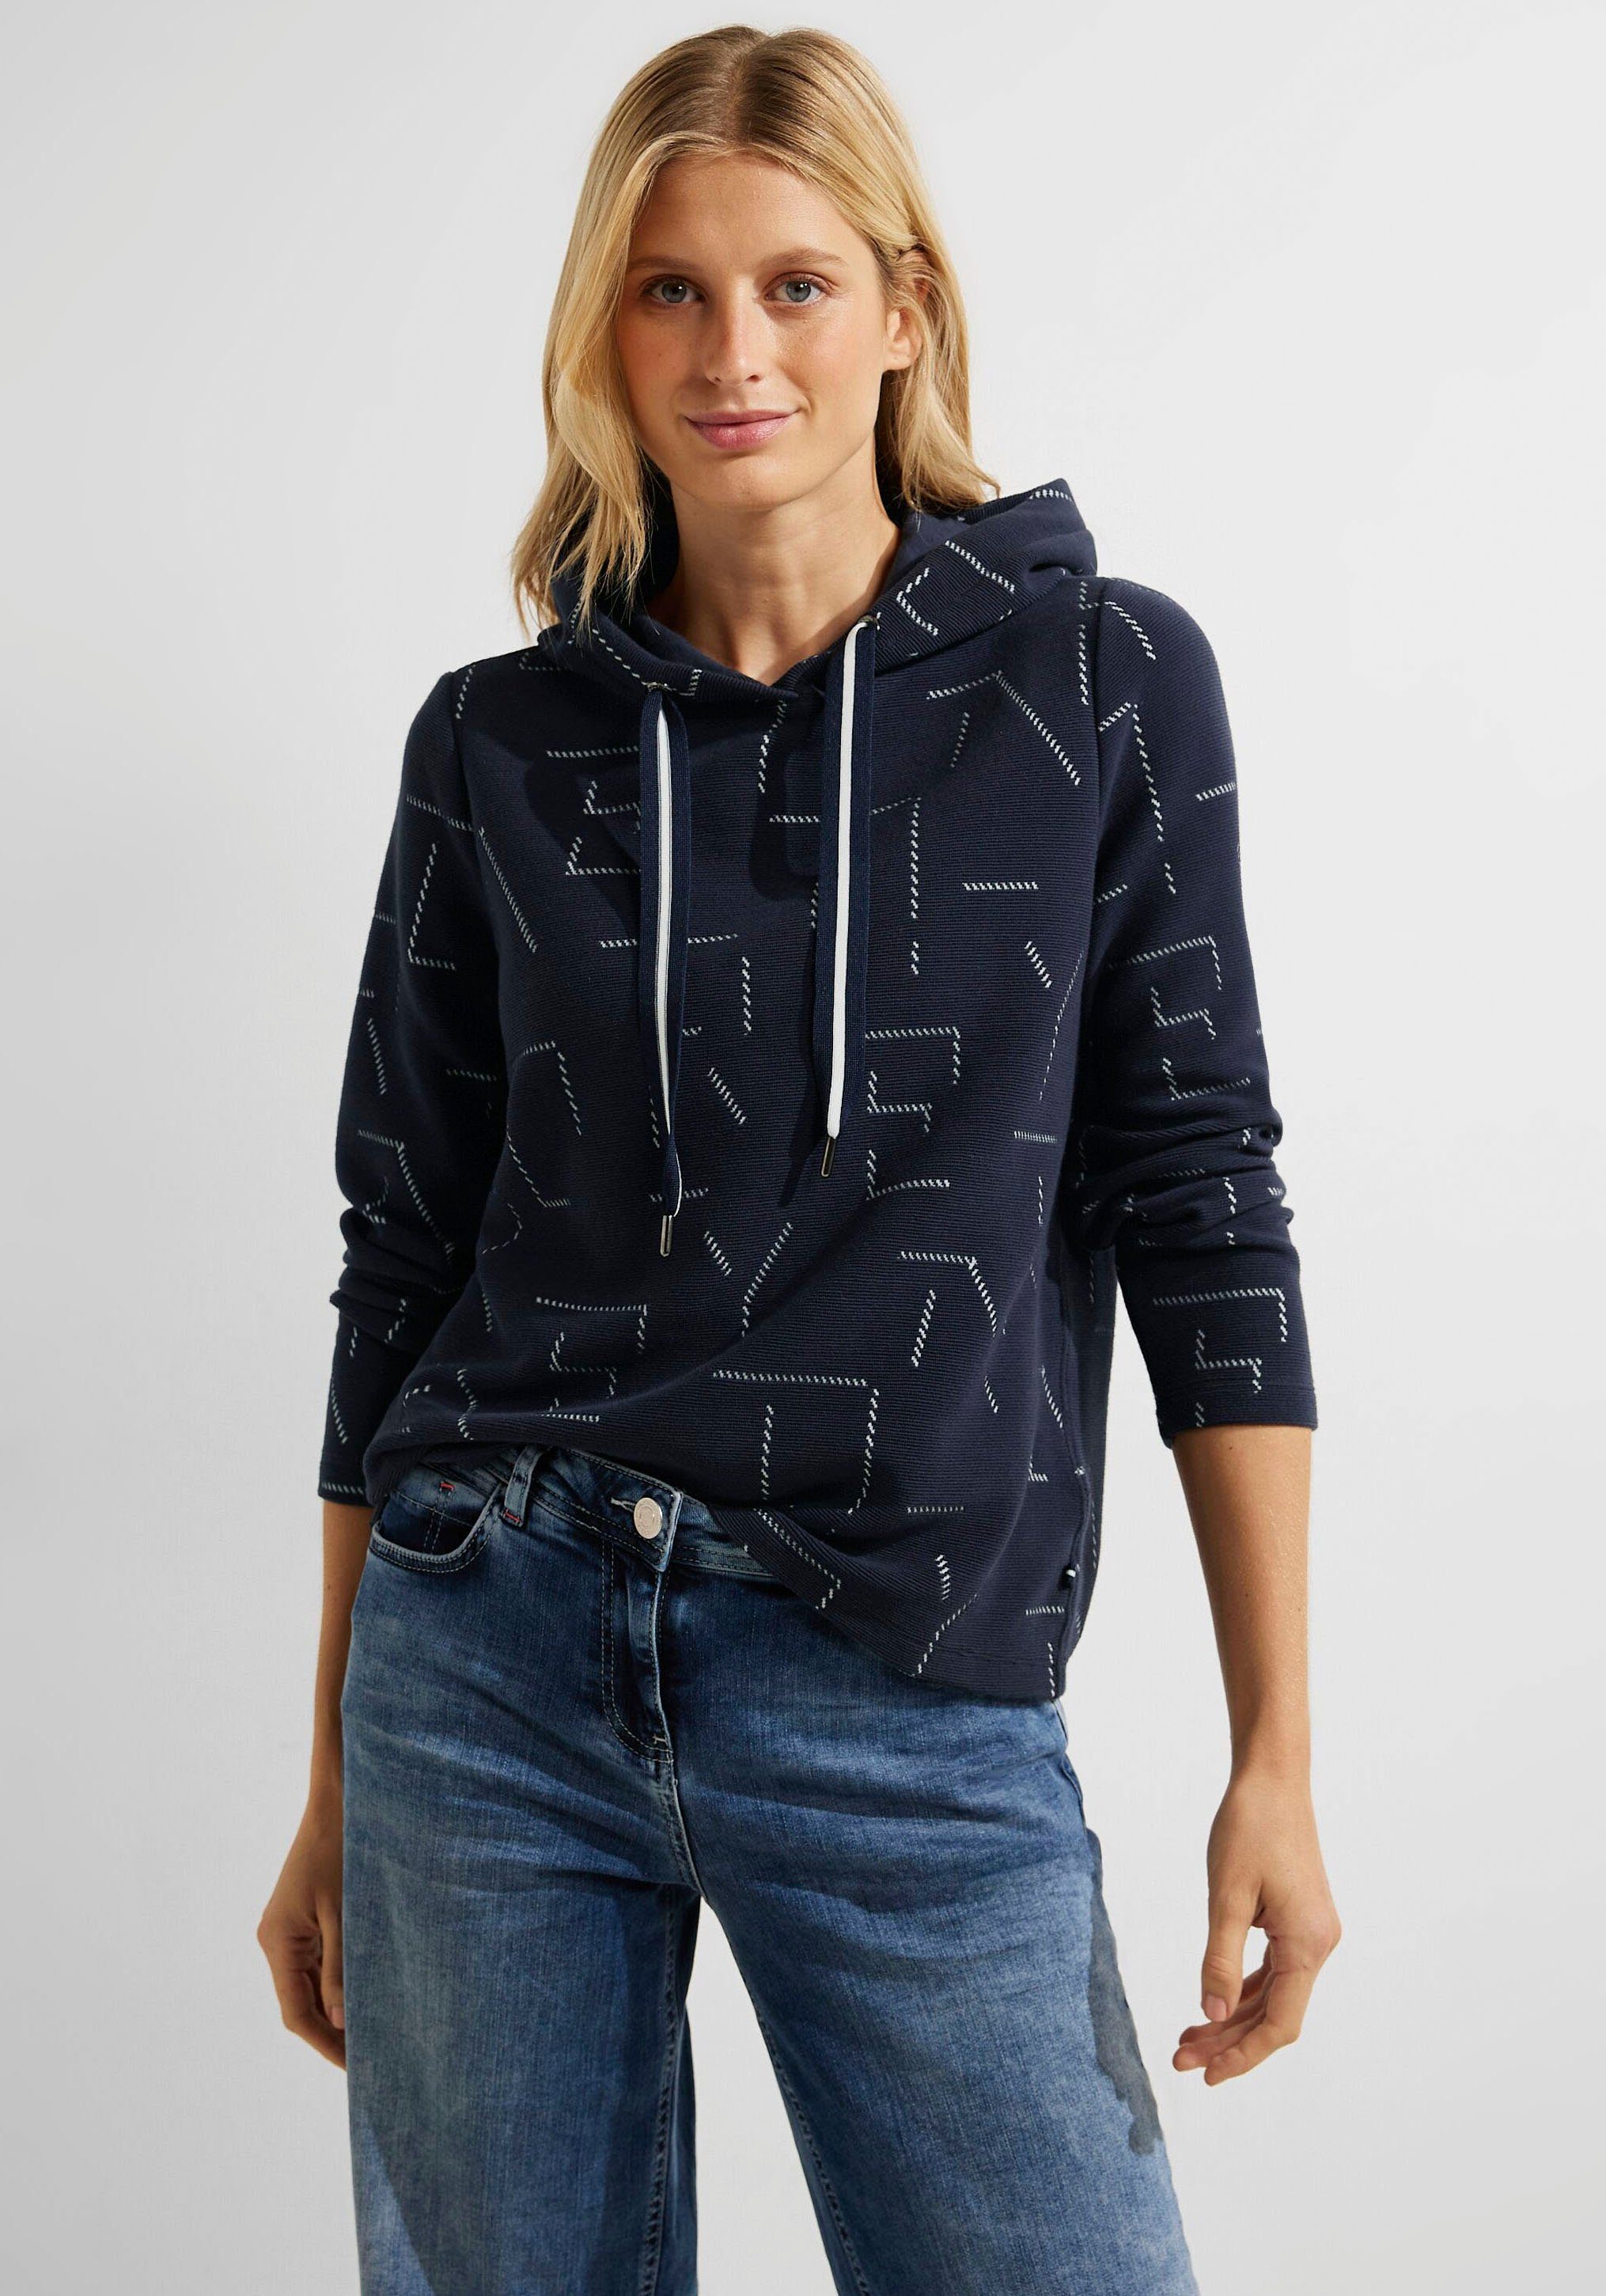 und Kombination Sweatshirt Jacquard-Muster, einzigartigem Raffinesse Lässigkeit mit Perfekte Cecil aus